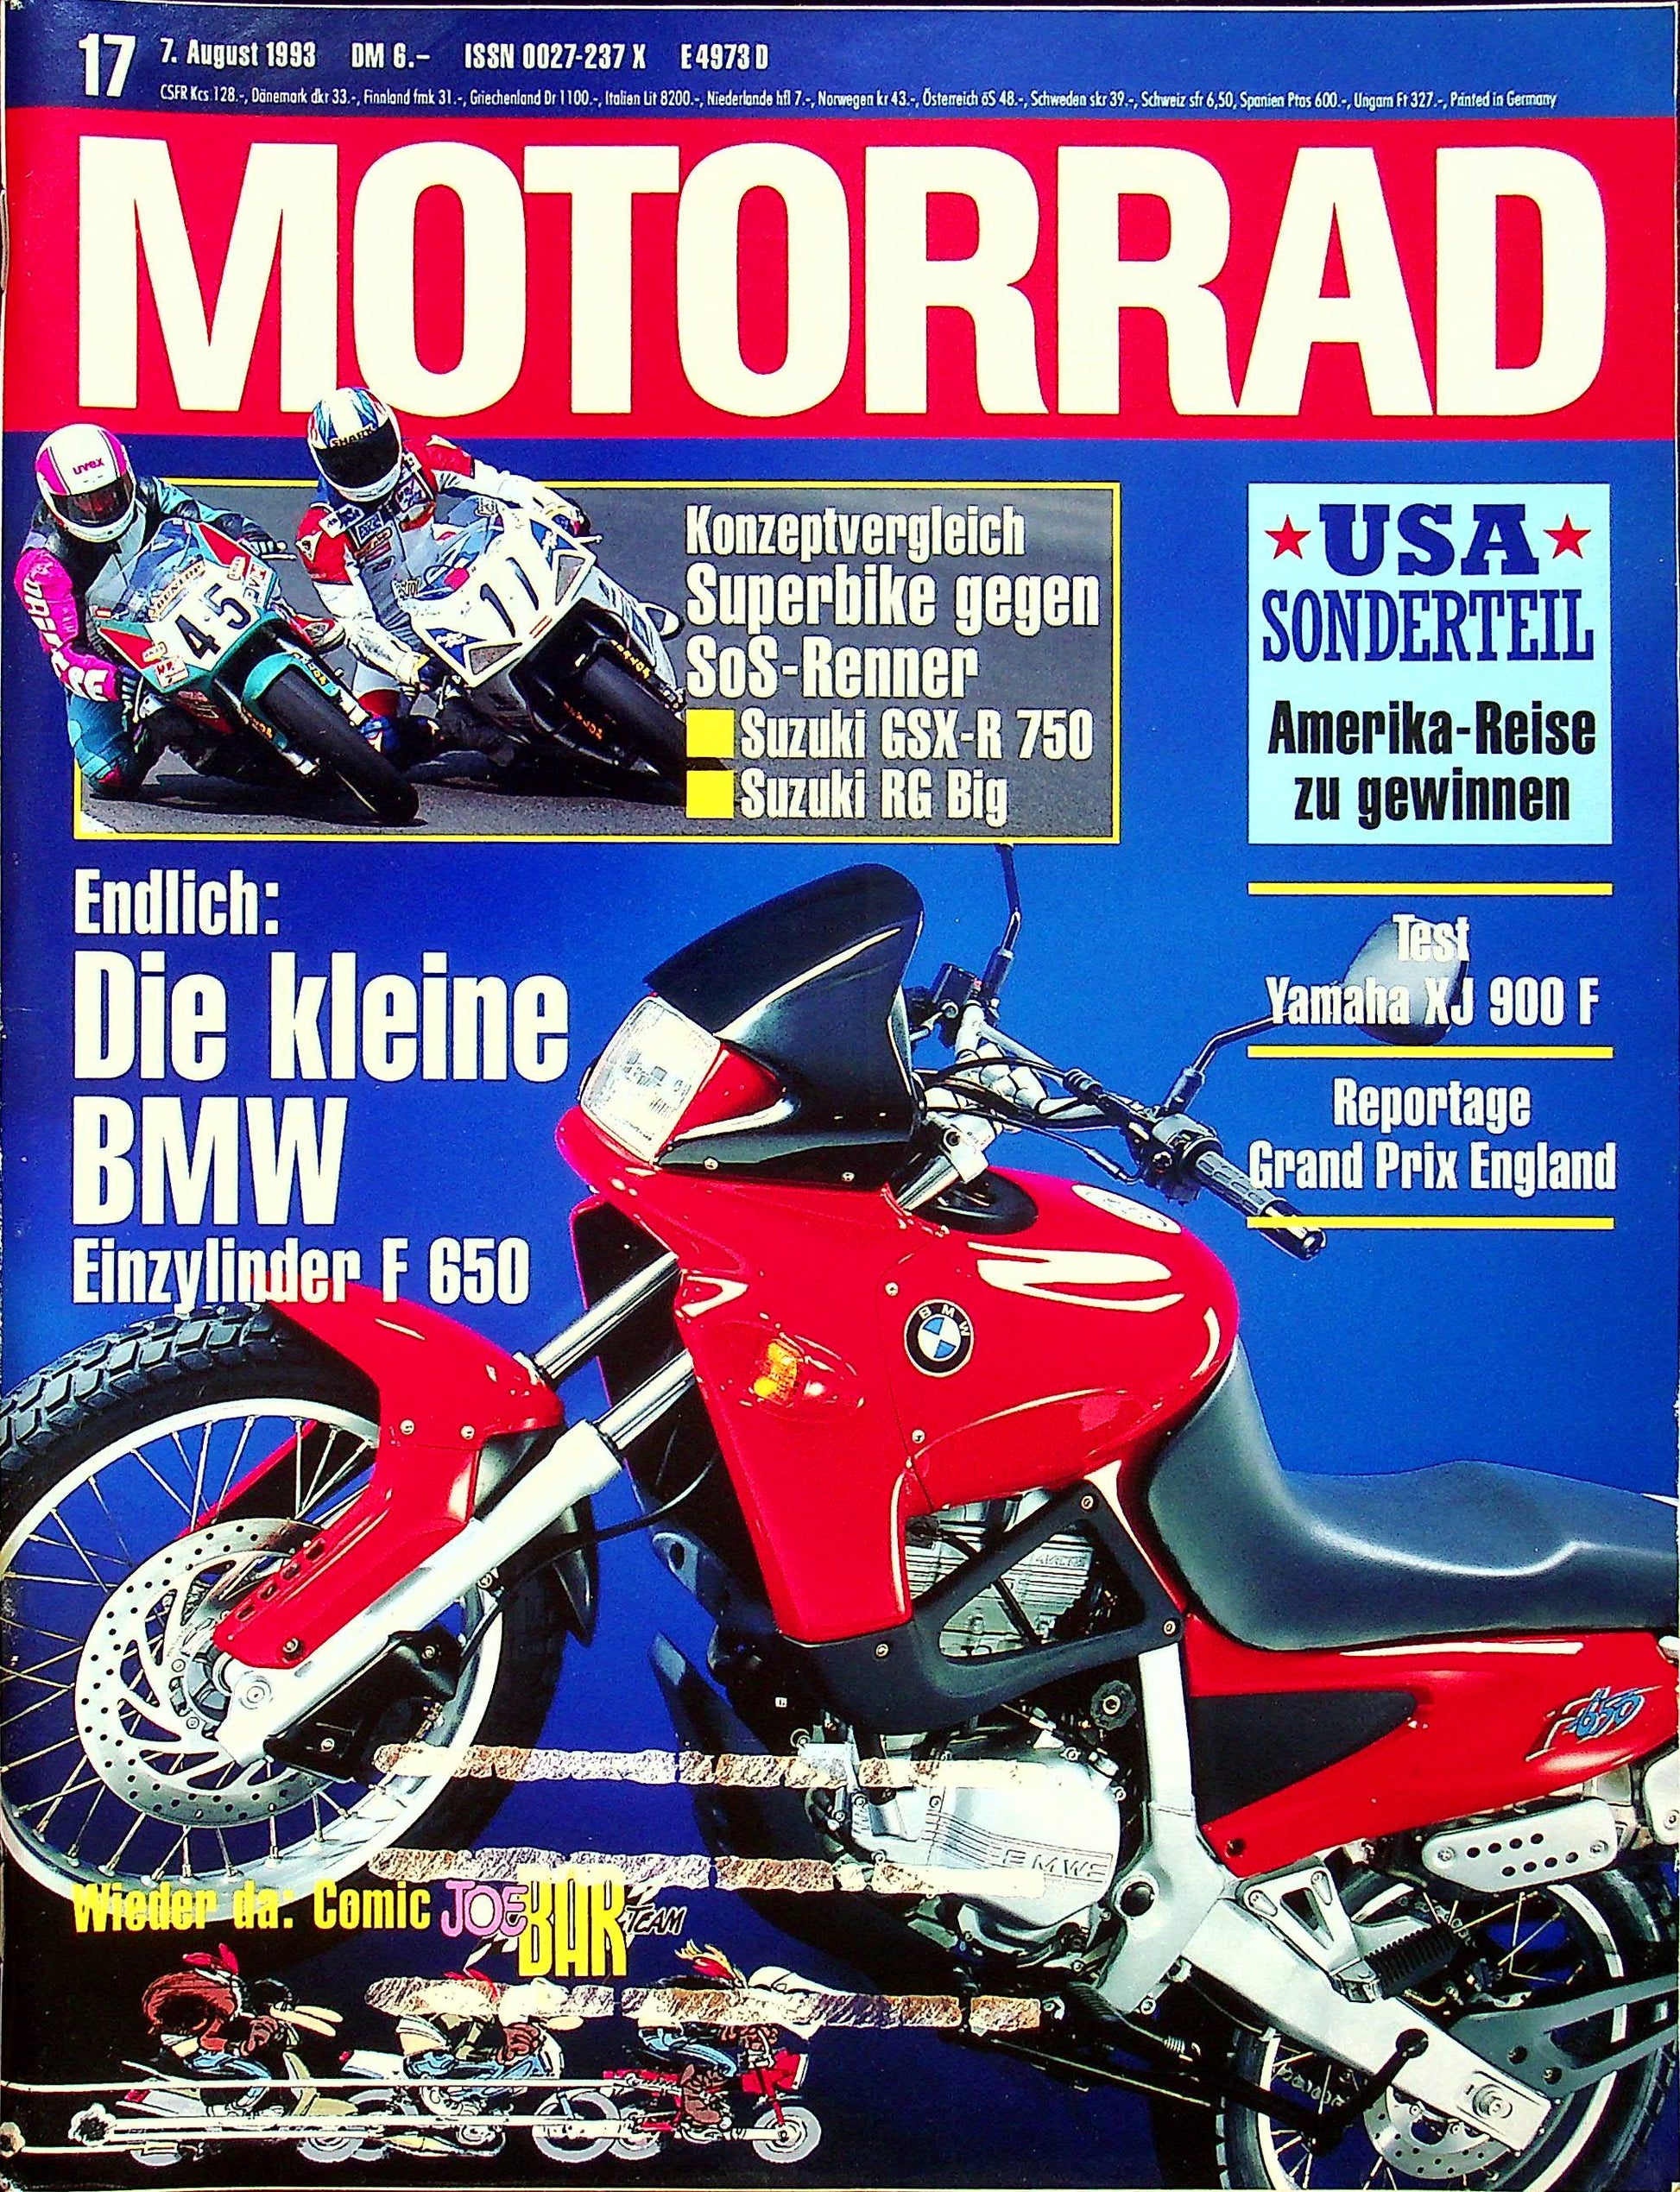 Motorrad 17/1993